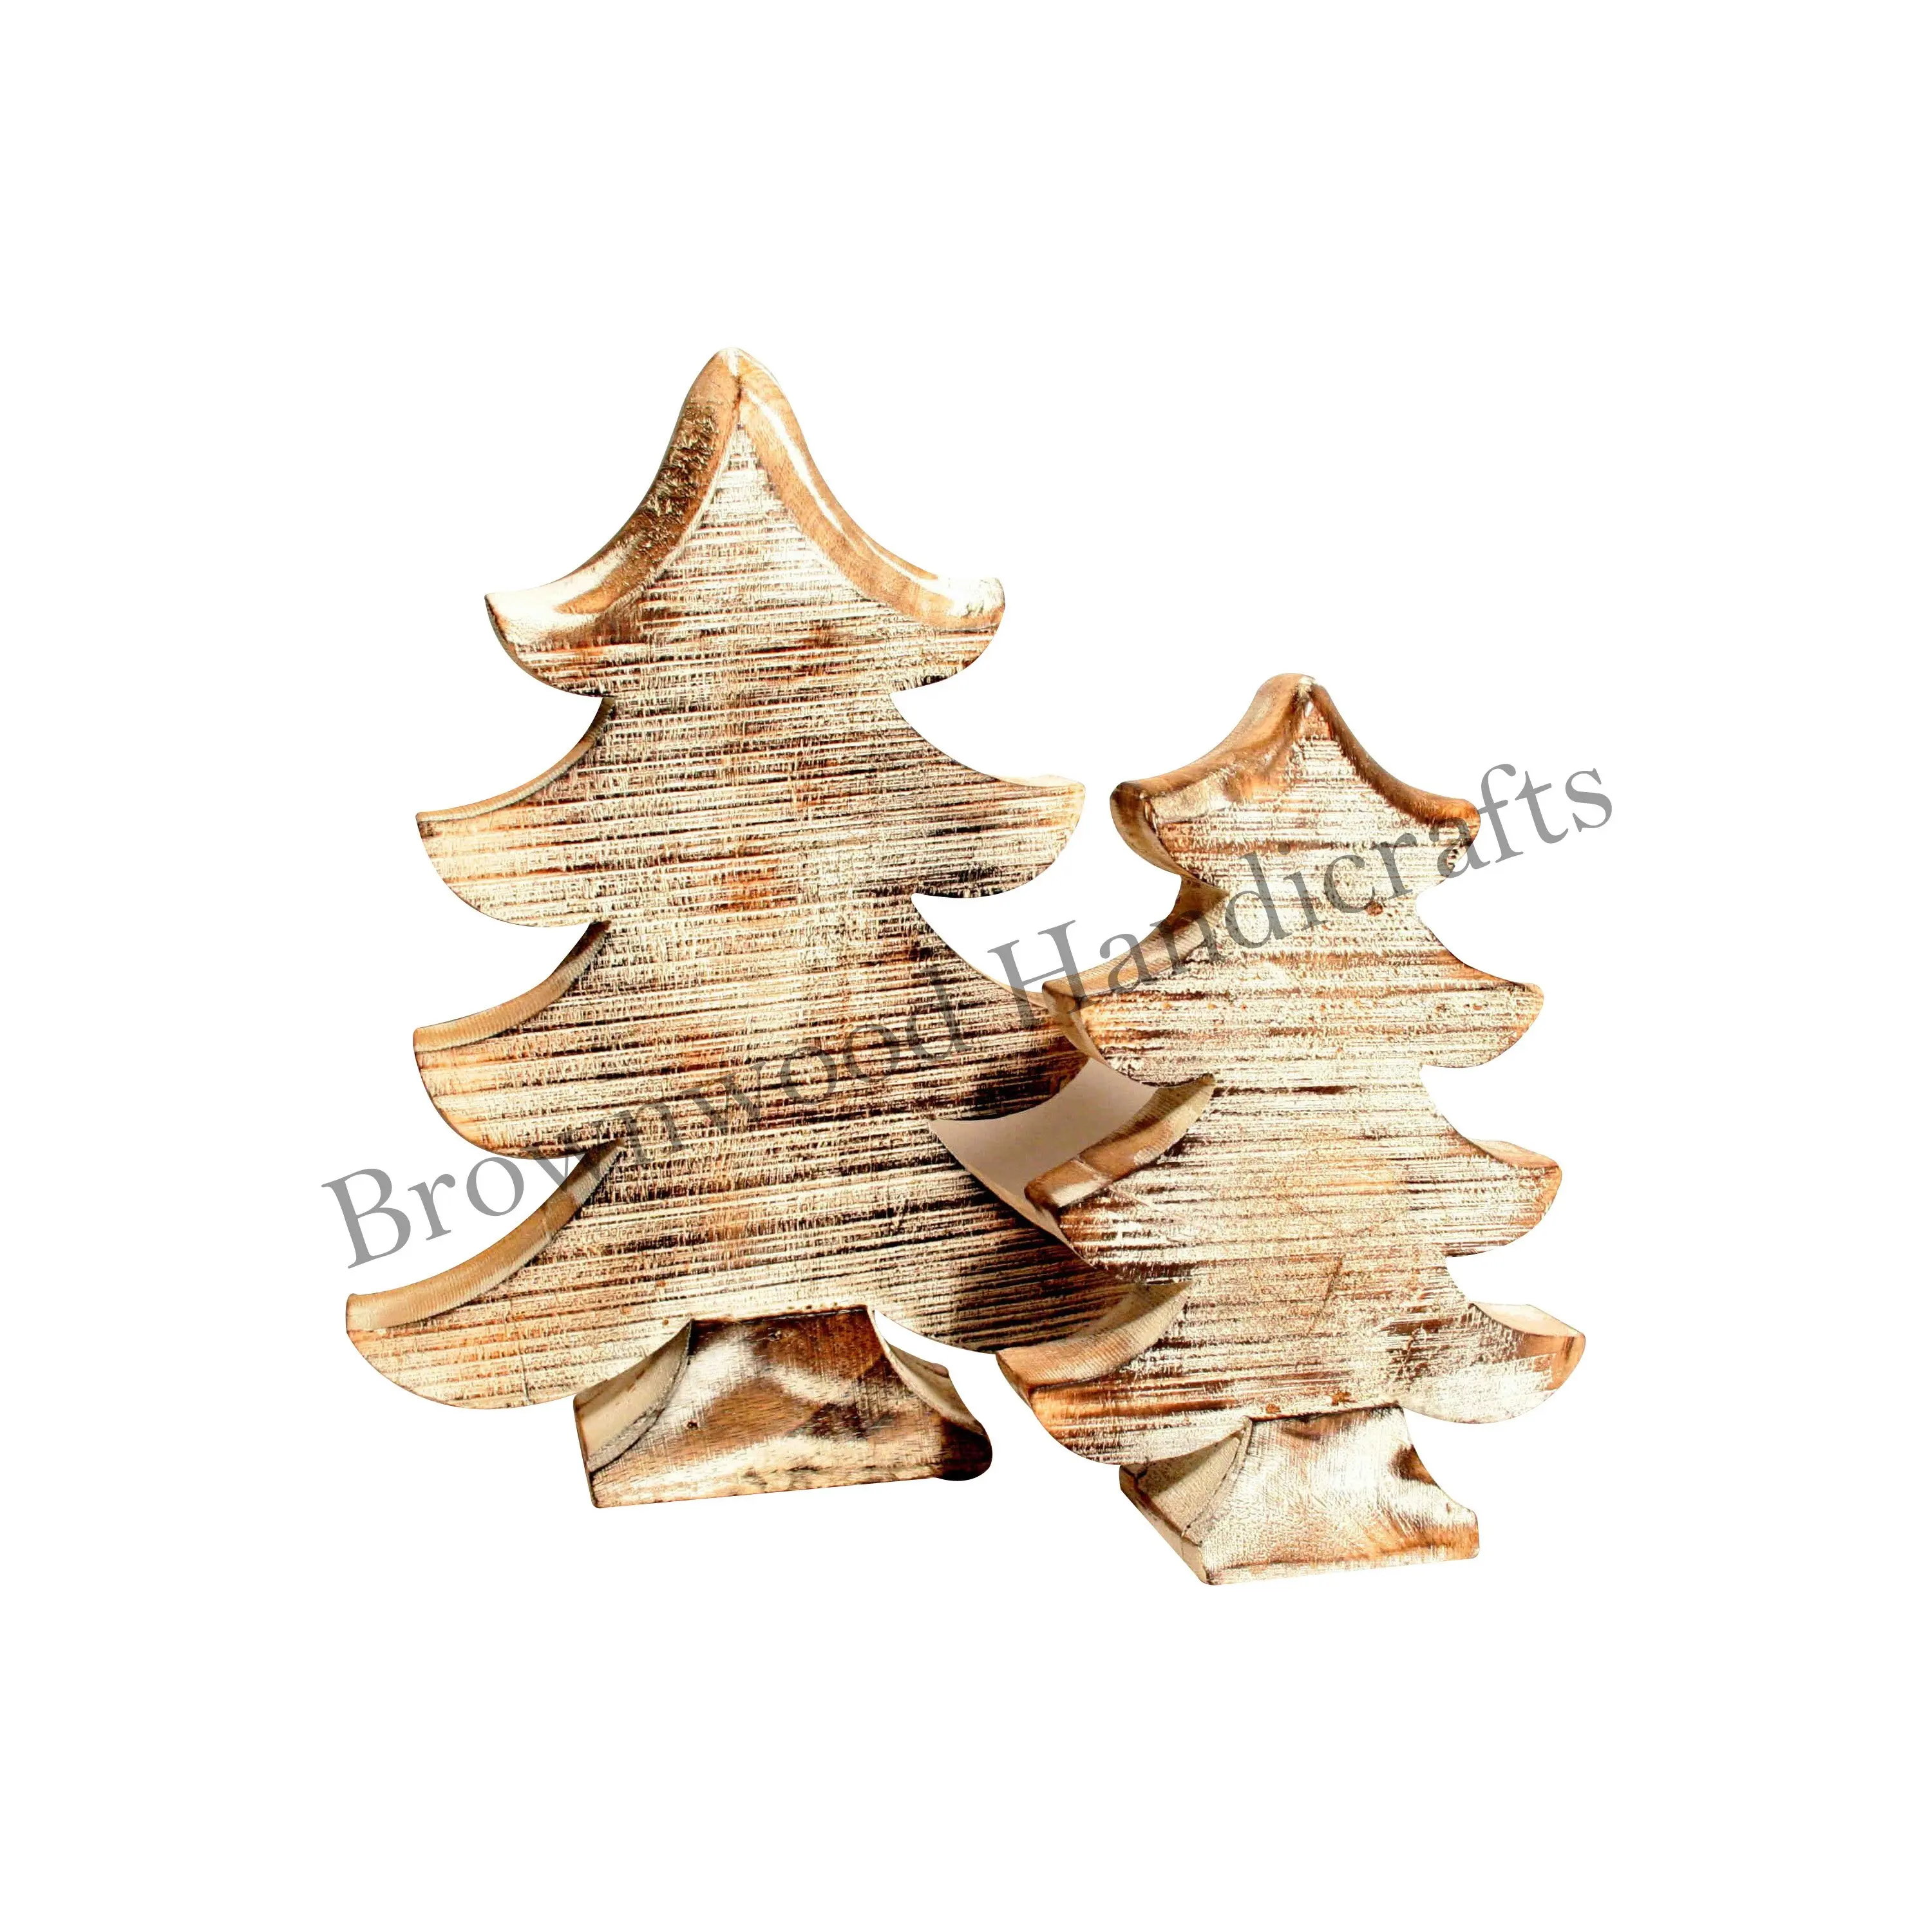 Hand geschnitzte Weihnachts baums chmuck aus Mango holz 2er-Set Rustikales Weihnachts dekor aus Holz für festliches Ambiente und Geschenke